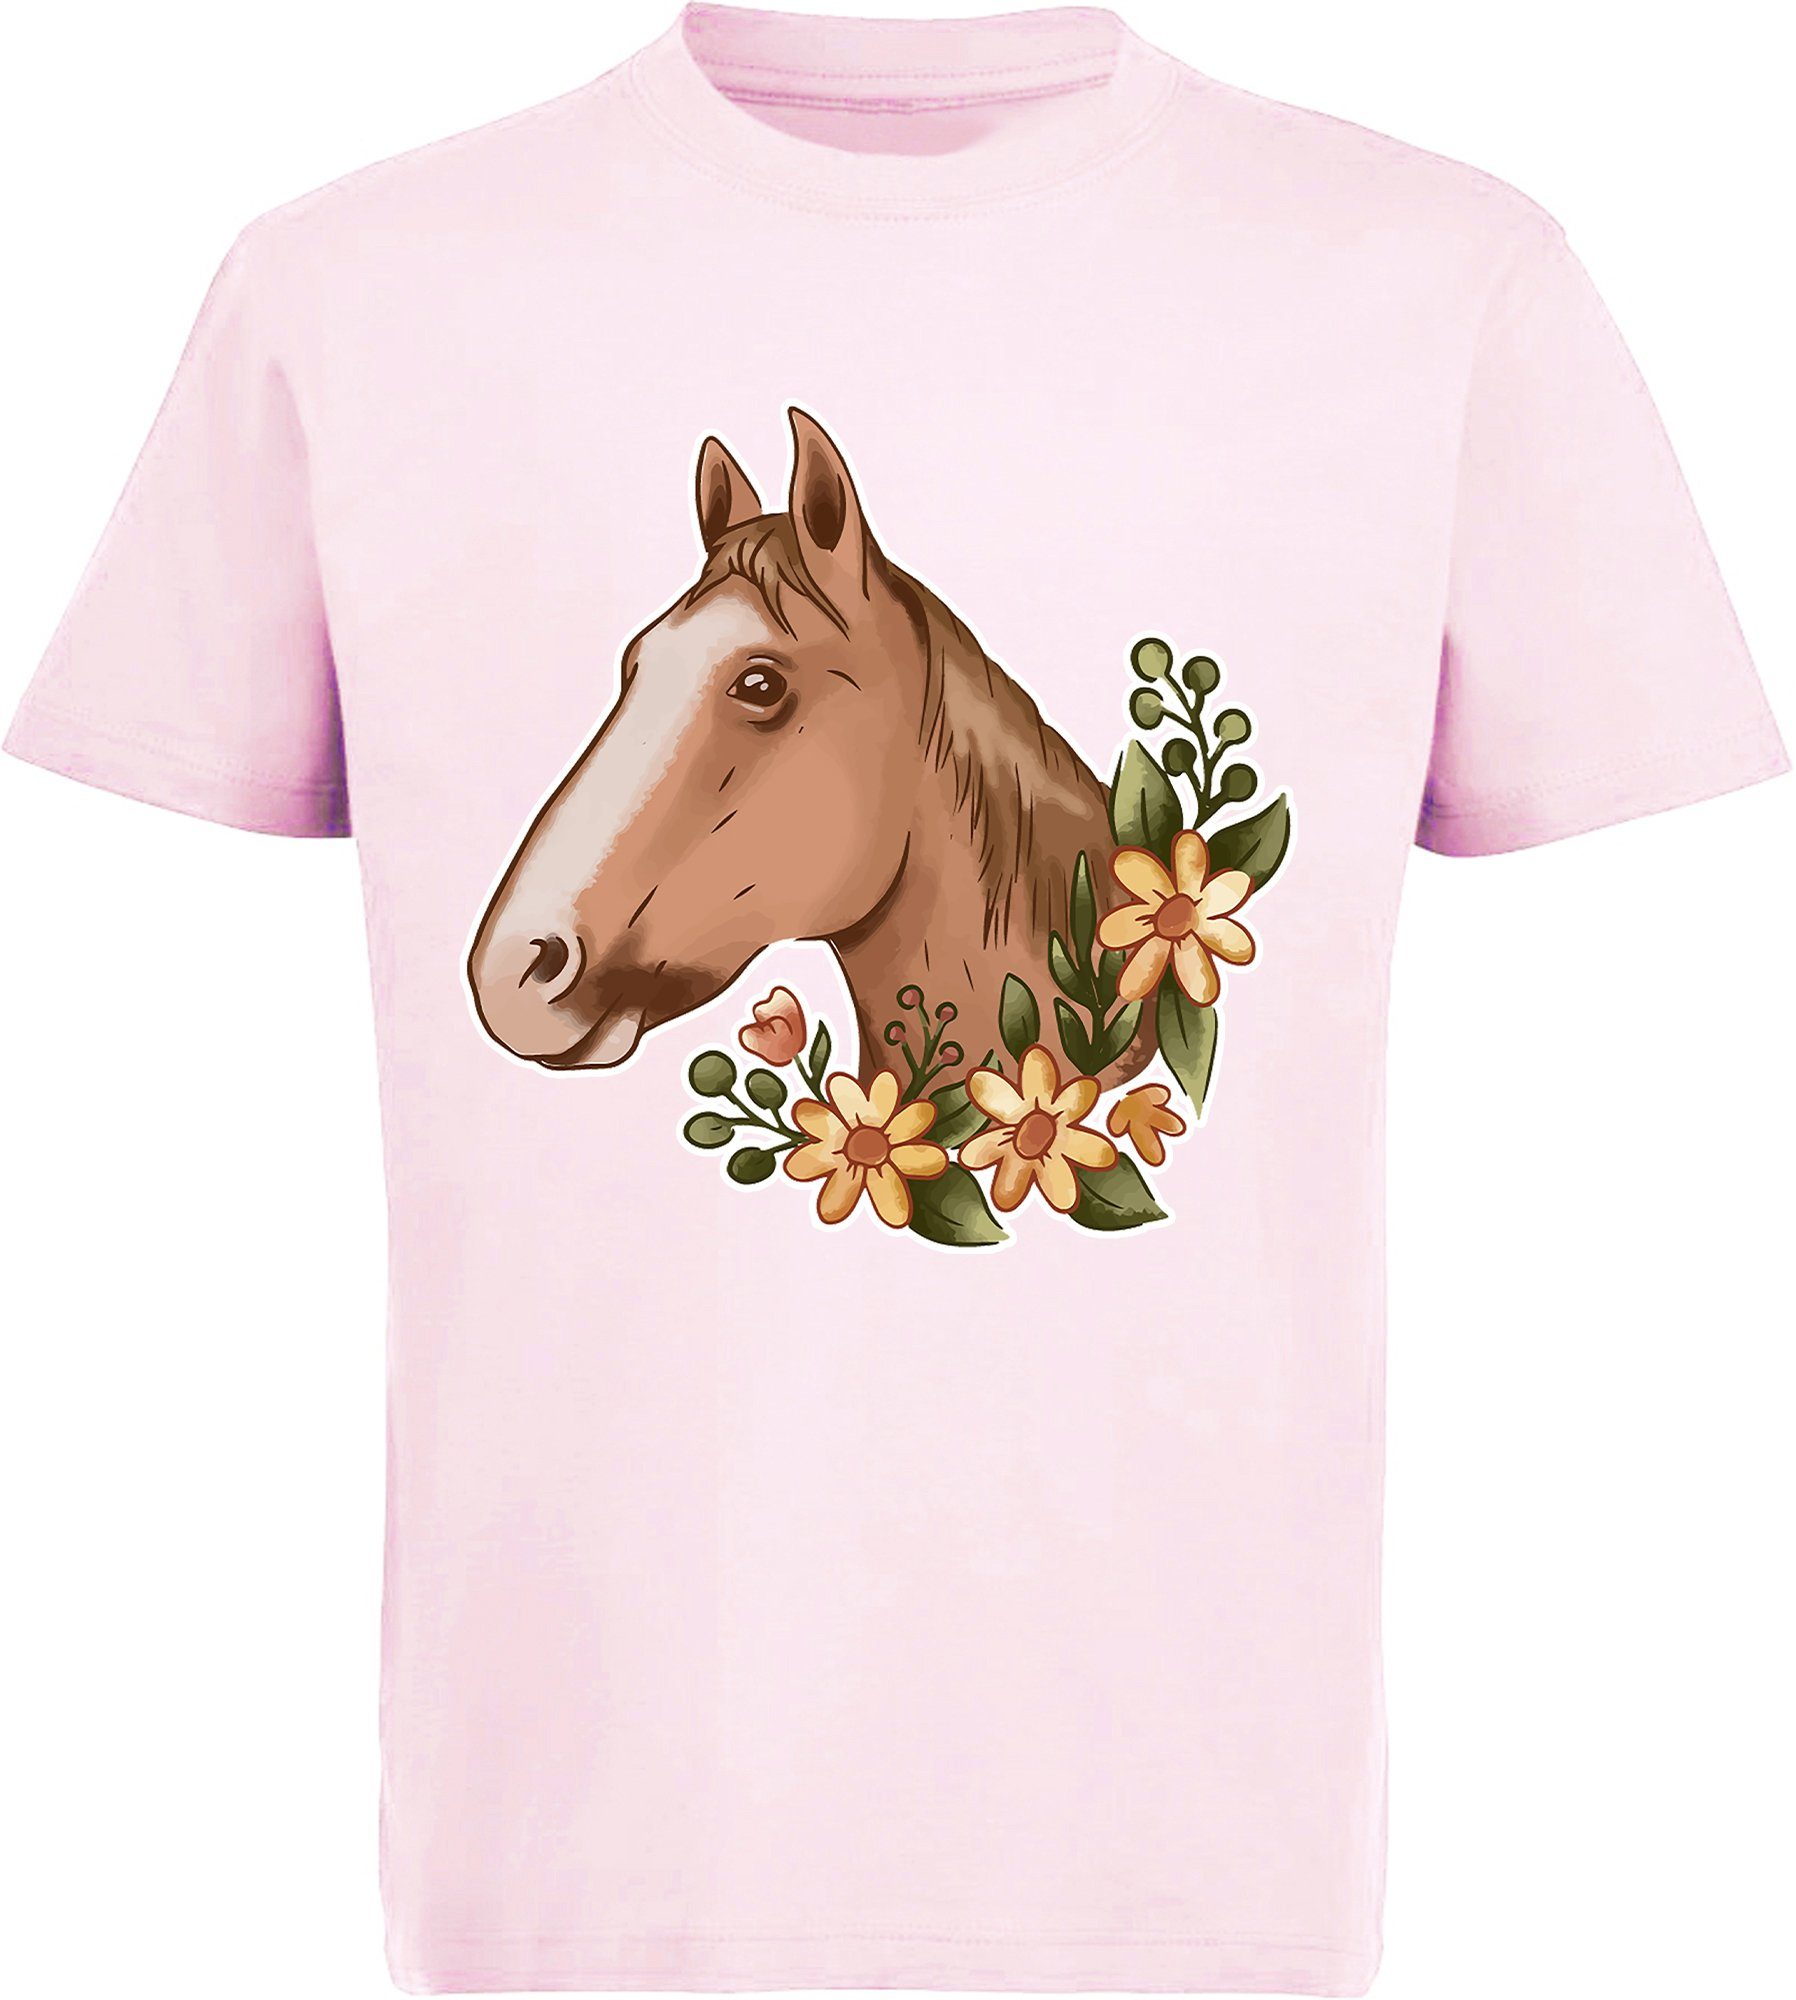 MyDesign24 Print-Shirt bedrucktes Kinder Mädchen T-Shirt - Hellbrauner Pferdekopf und Blumen Baumwollshirt mit Aufdruck, i181 rosa